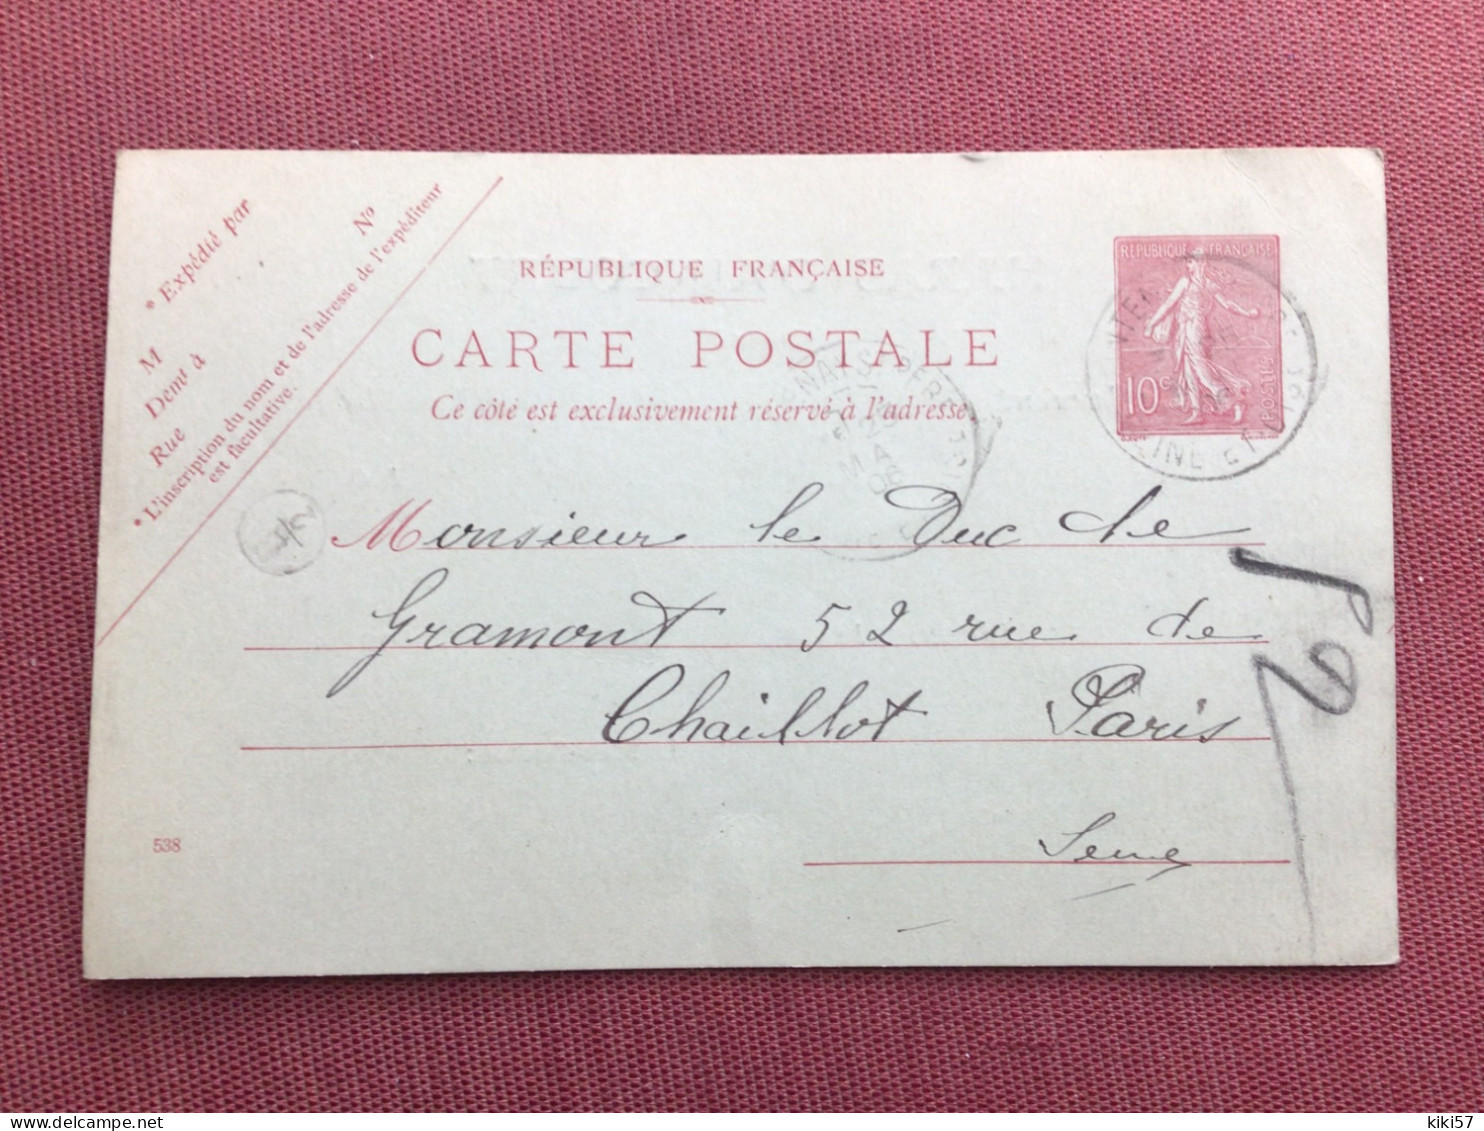 FRANCE Carte Du Haras D’AINCOURT Pour Le Duc De GRAMONT 1906 - Brieven En Documenten